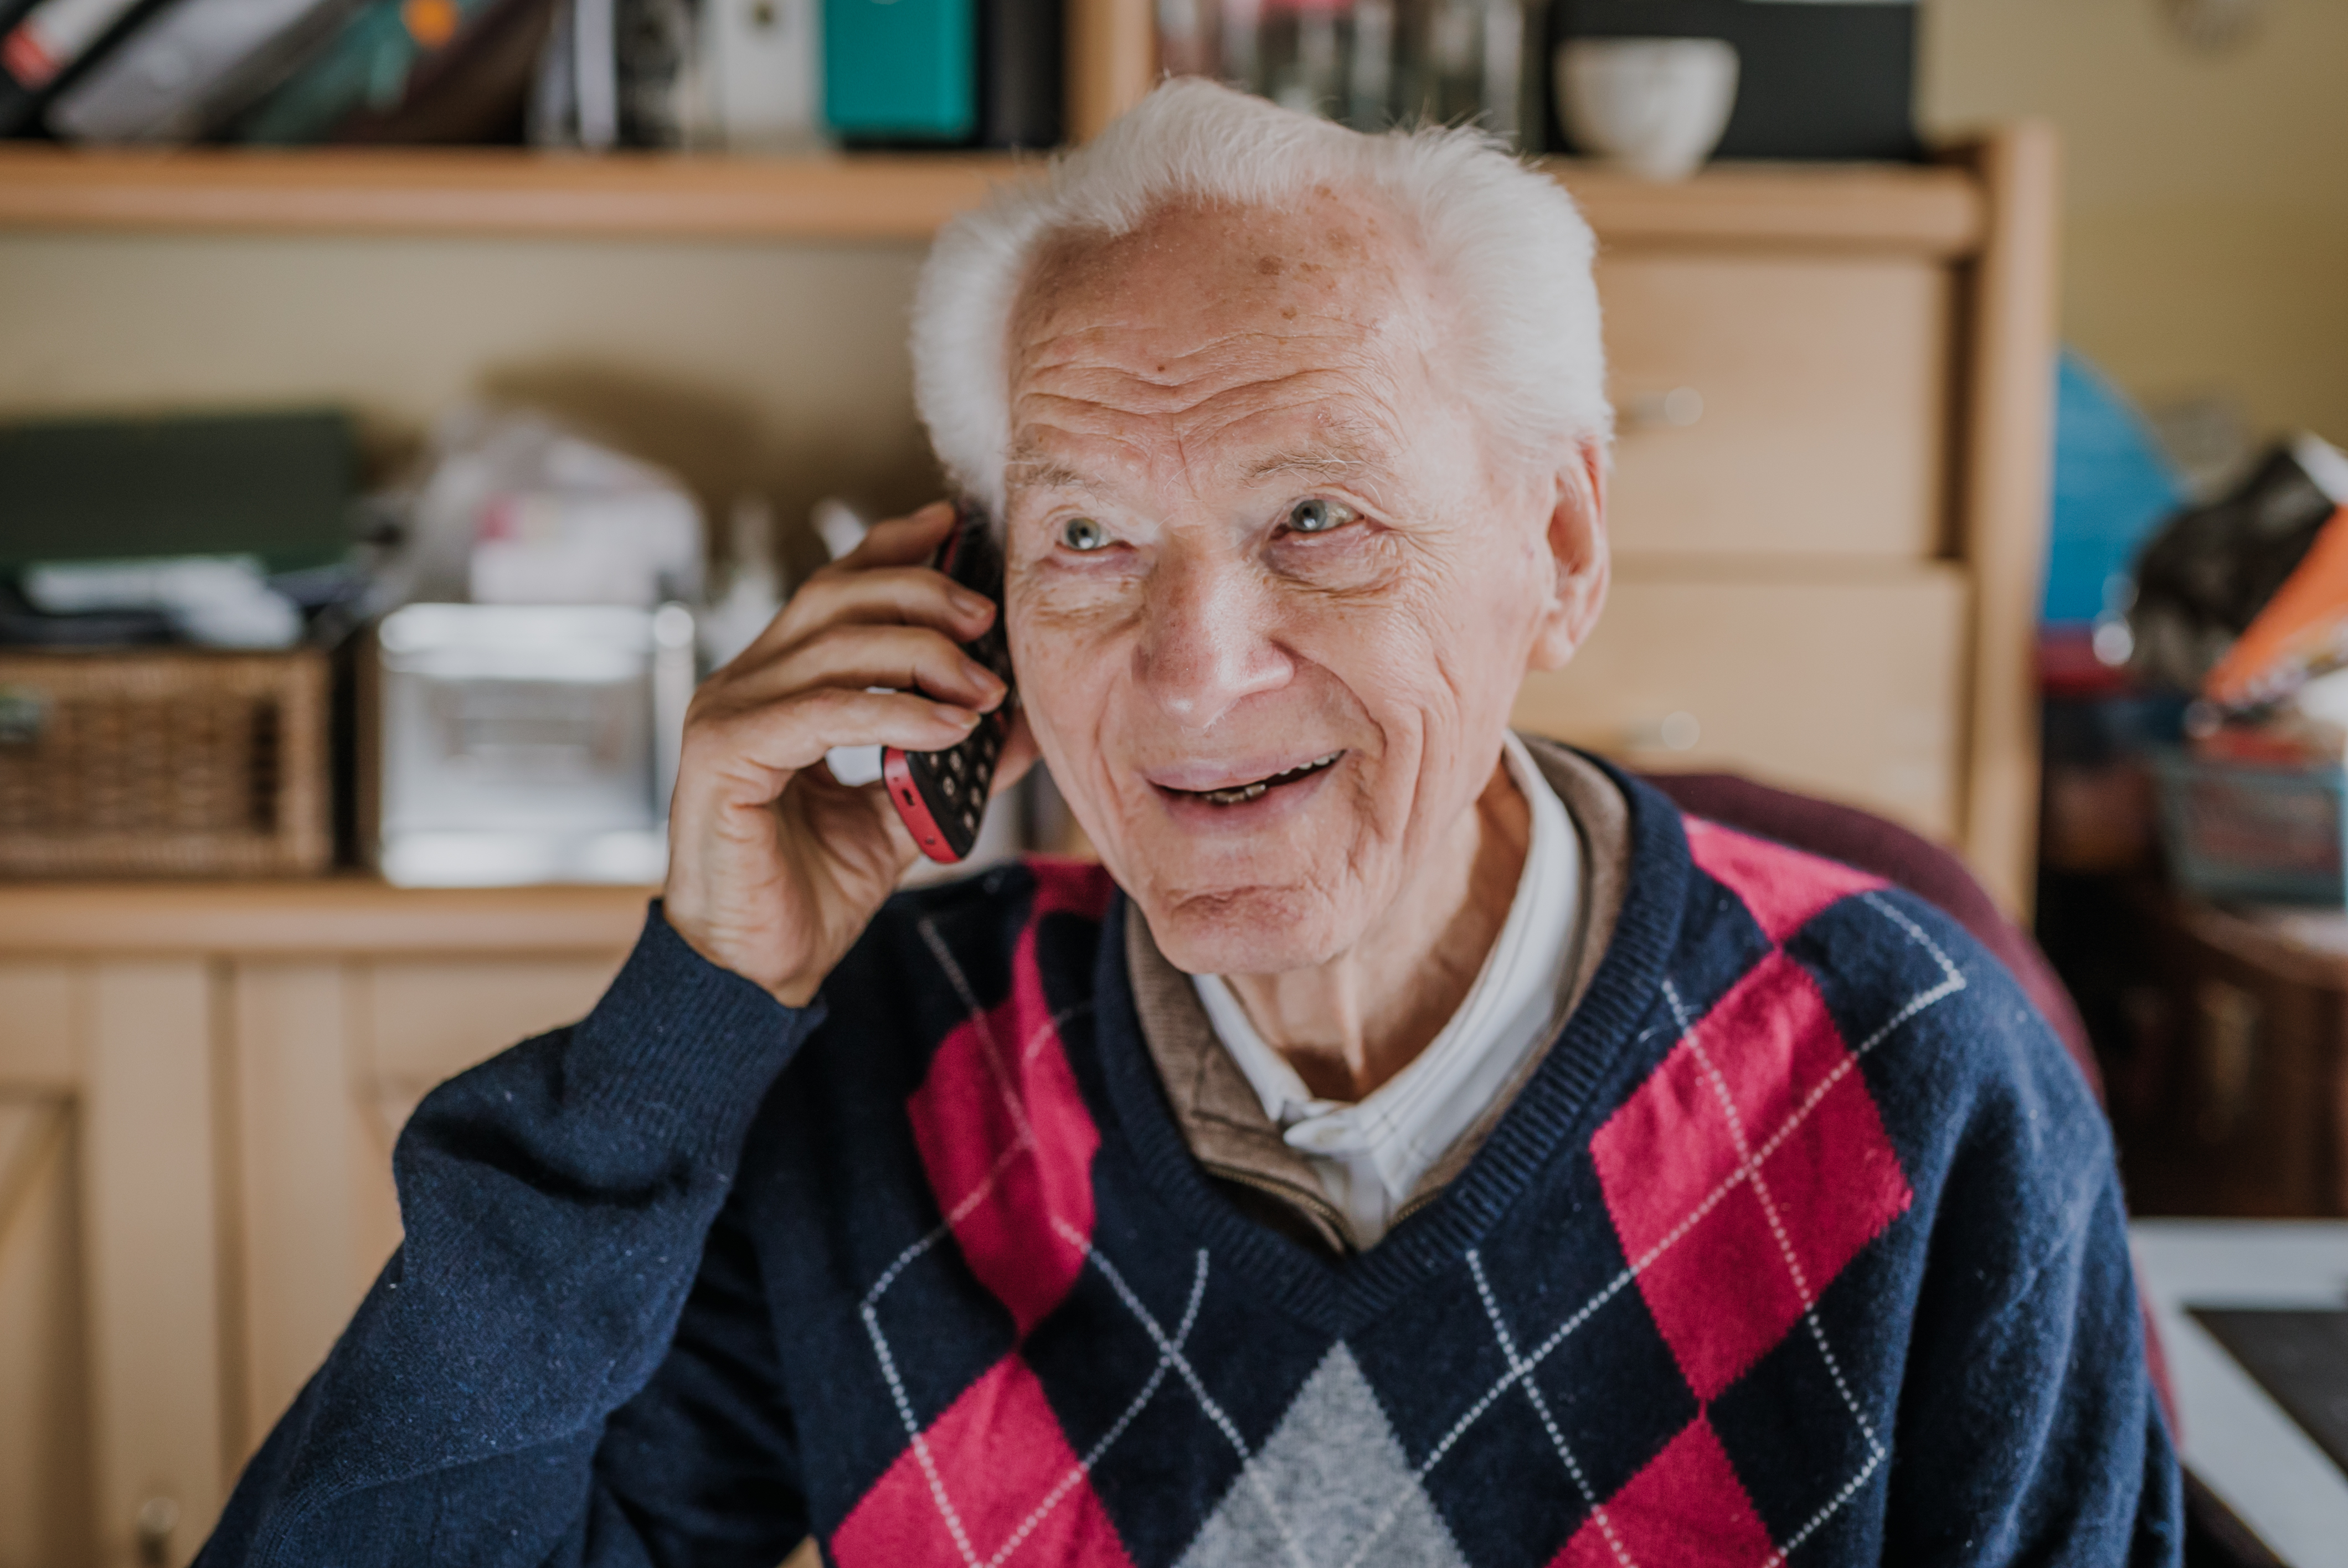 Un hombre sonríe mientras habla por teléfono | Fuente: Getty Images